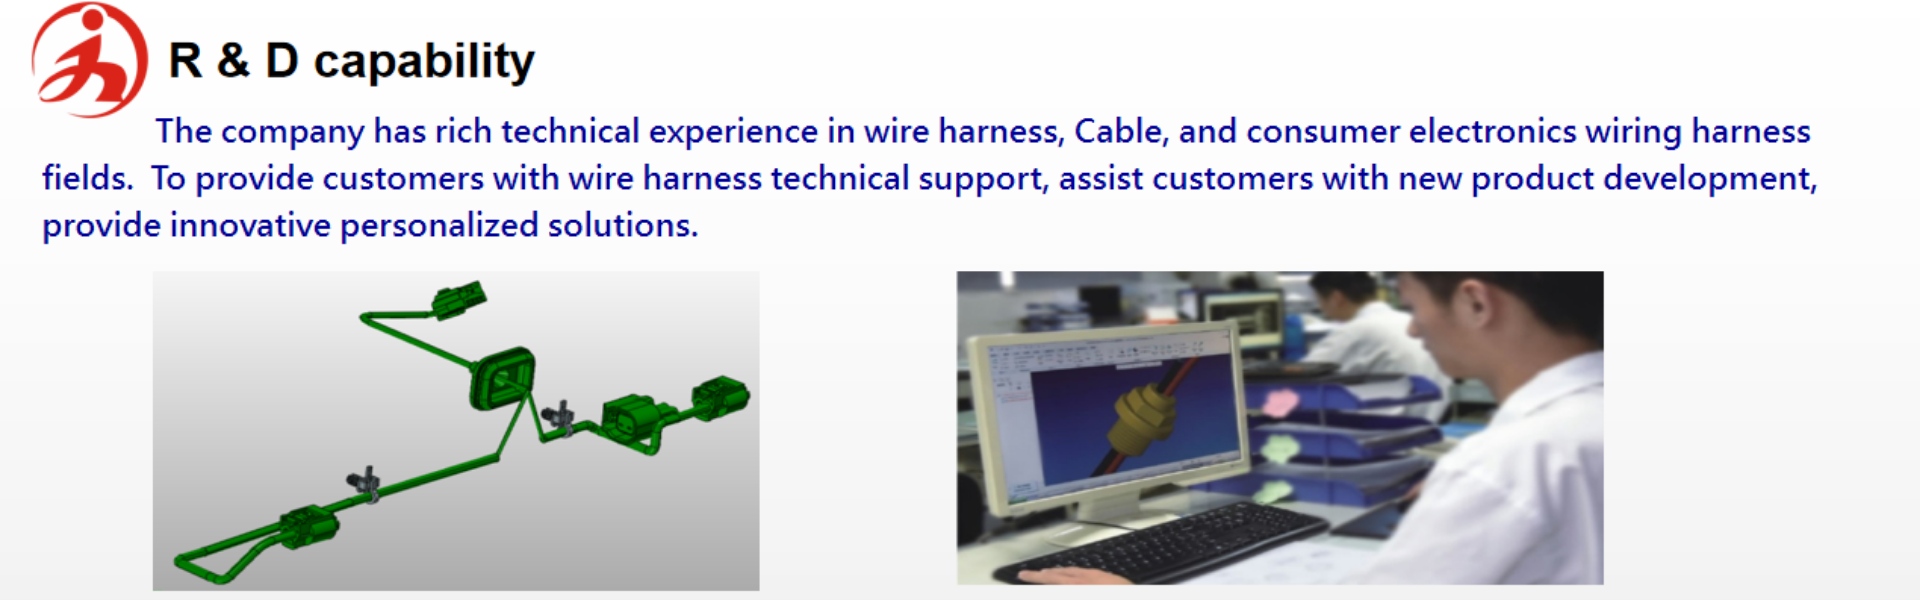 cablu de sârmă, conector de deplasare a izolației, ansamblu de cablu,YinHe (DongGuan) Electronic Technology Co., LTD